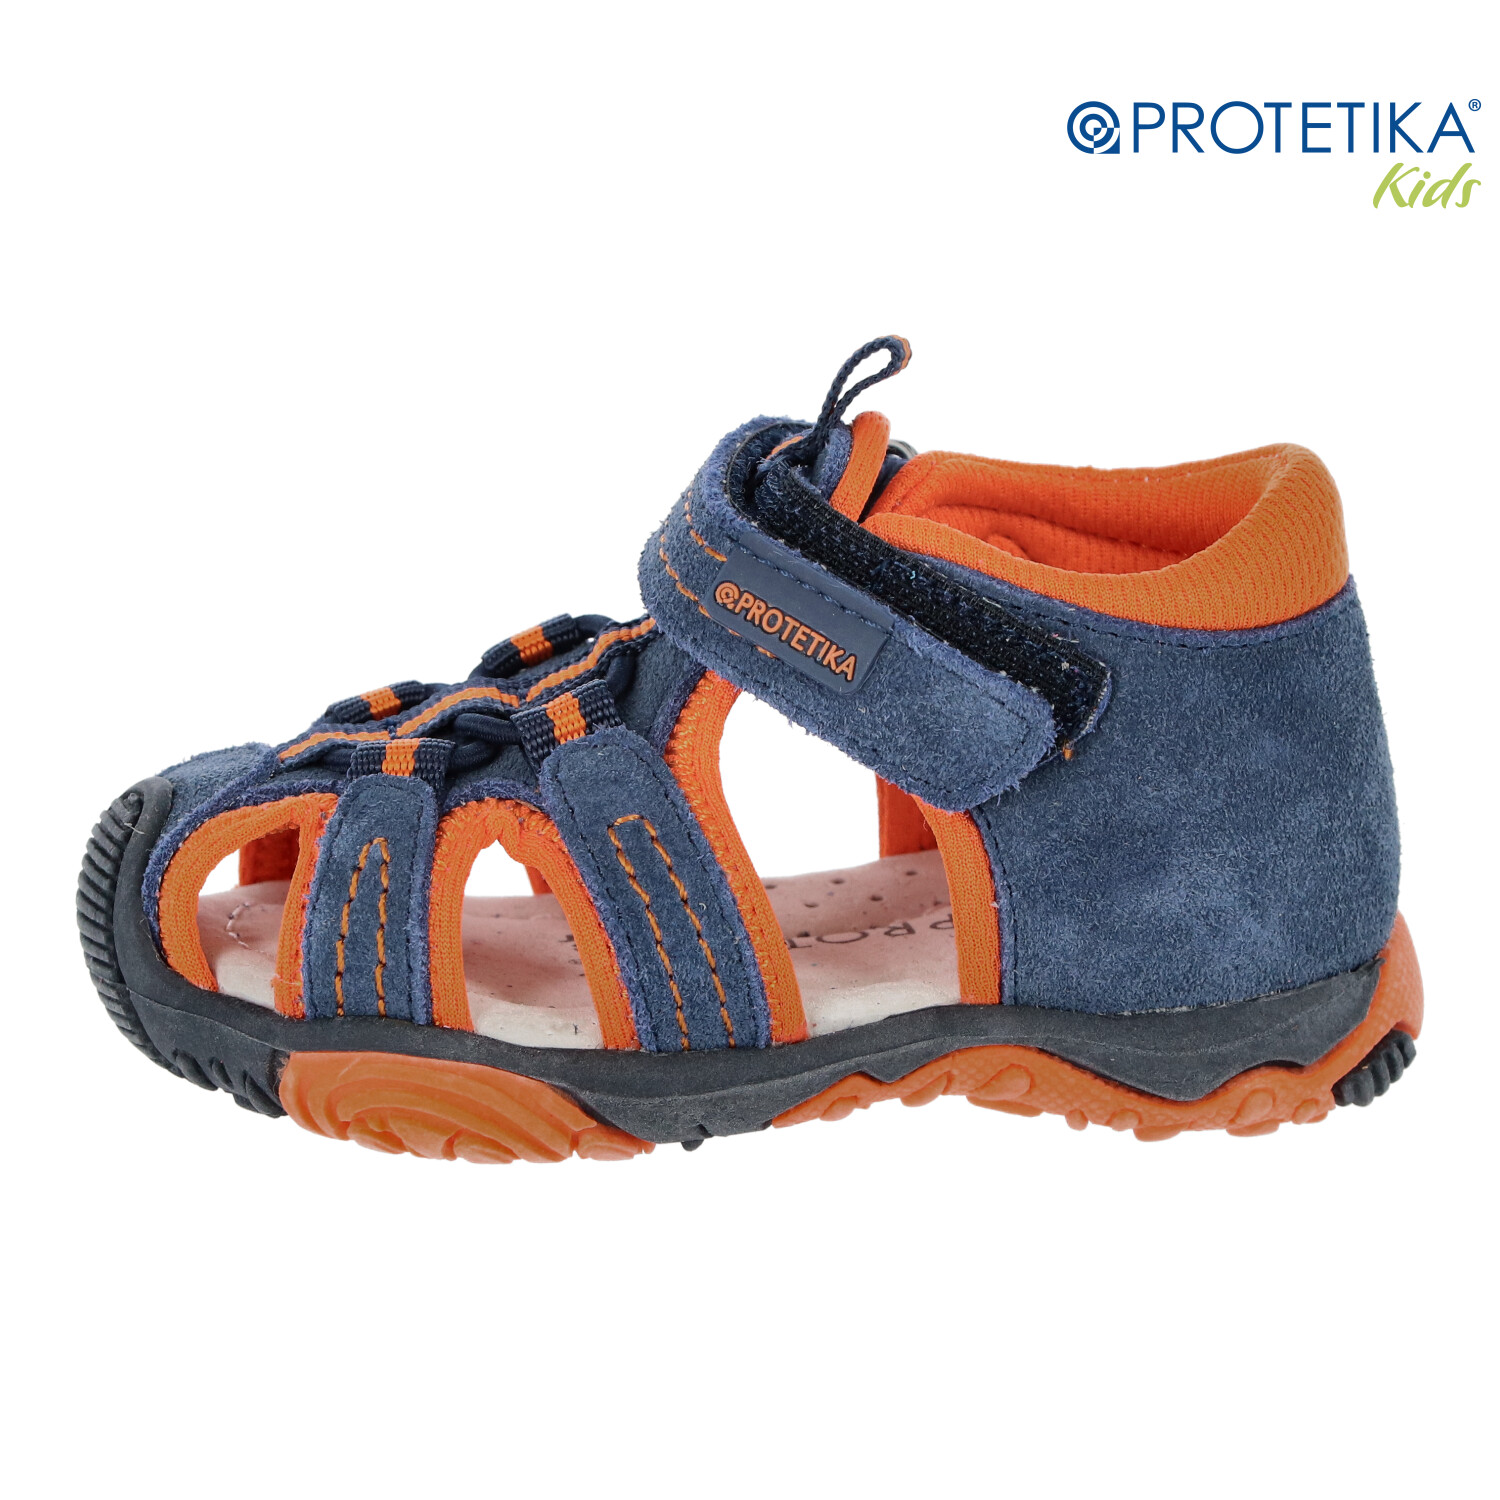 Protetika - sandále SID orange